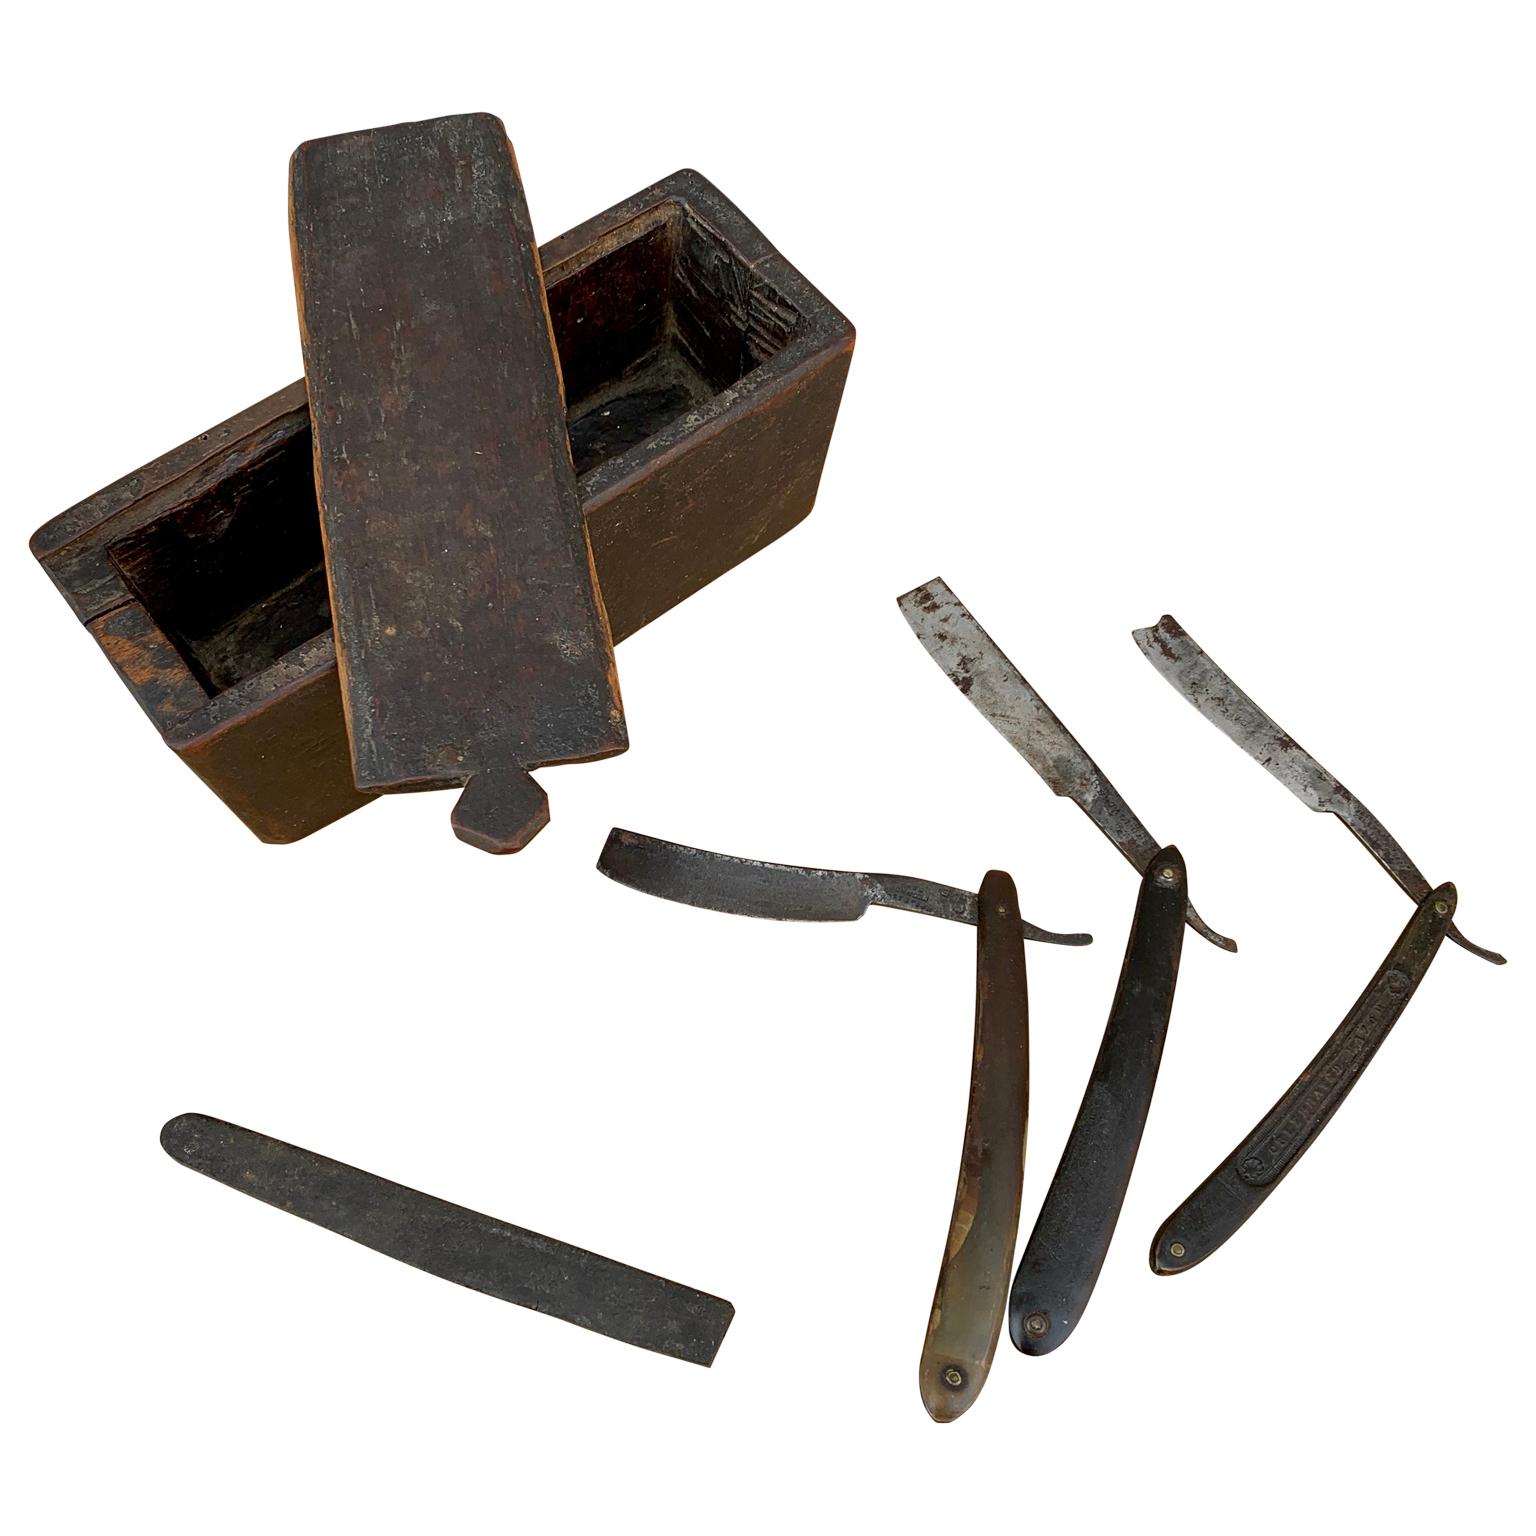 Une boîte originale suédoise d'art populaire peinte. Depuis le début du 19e siècle, elle est utilisée pour conserver les couteaux de rasage et autres fournitures similaires. Inclus 3 couteaux avec les lames de rasoir en acier anglais.